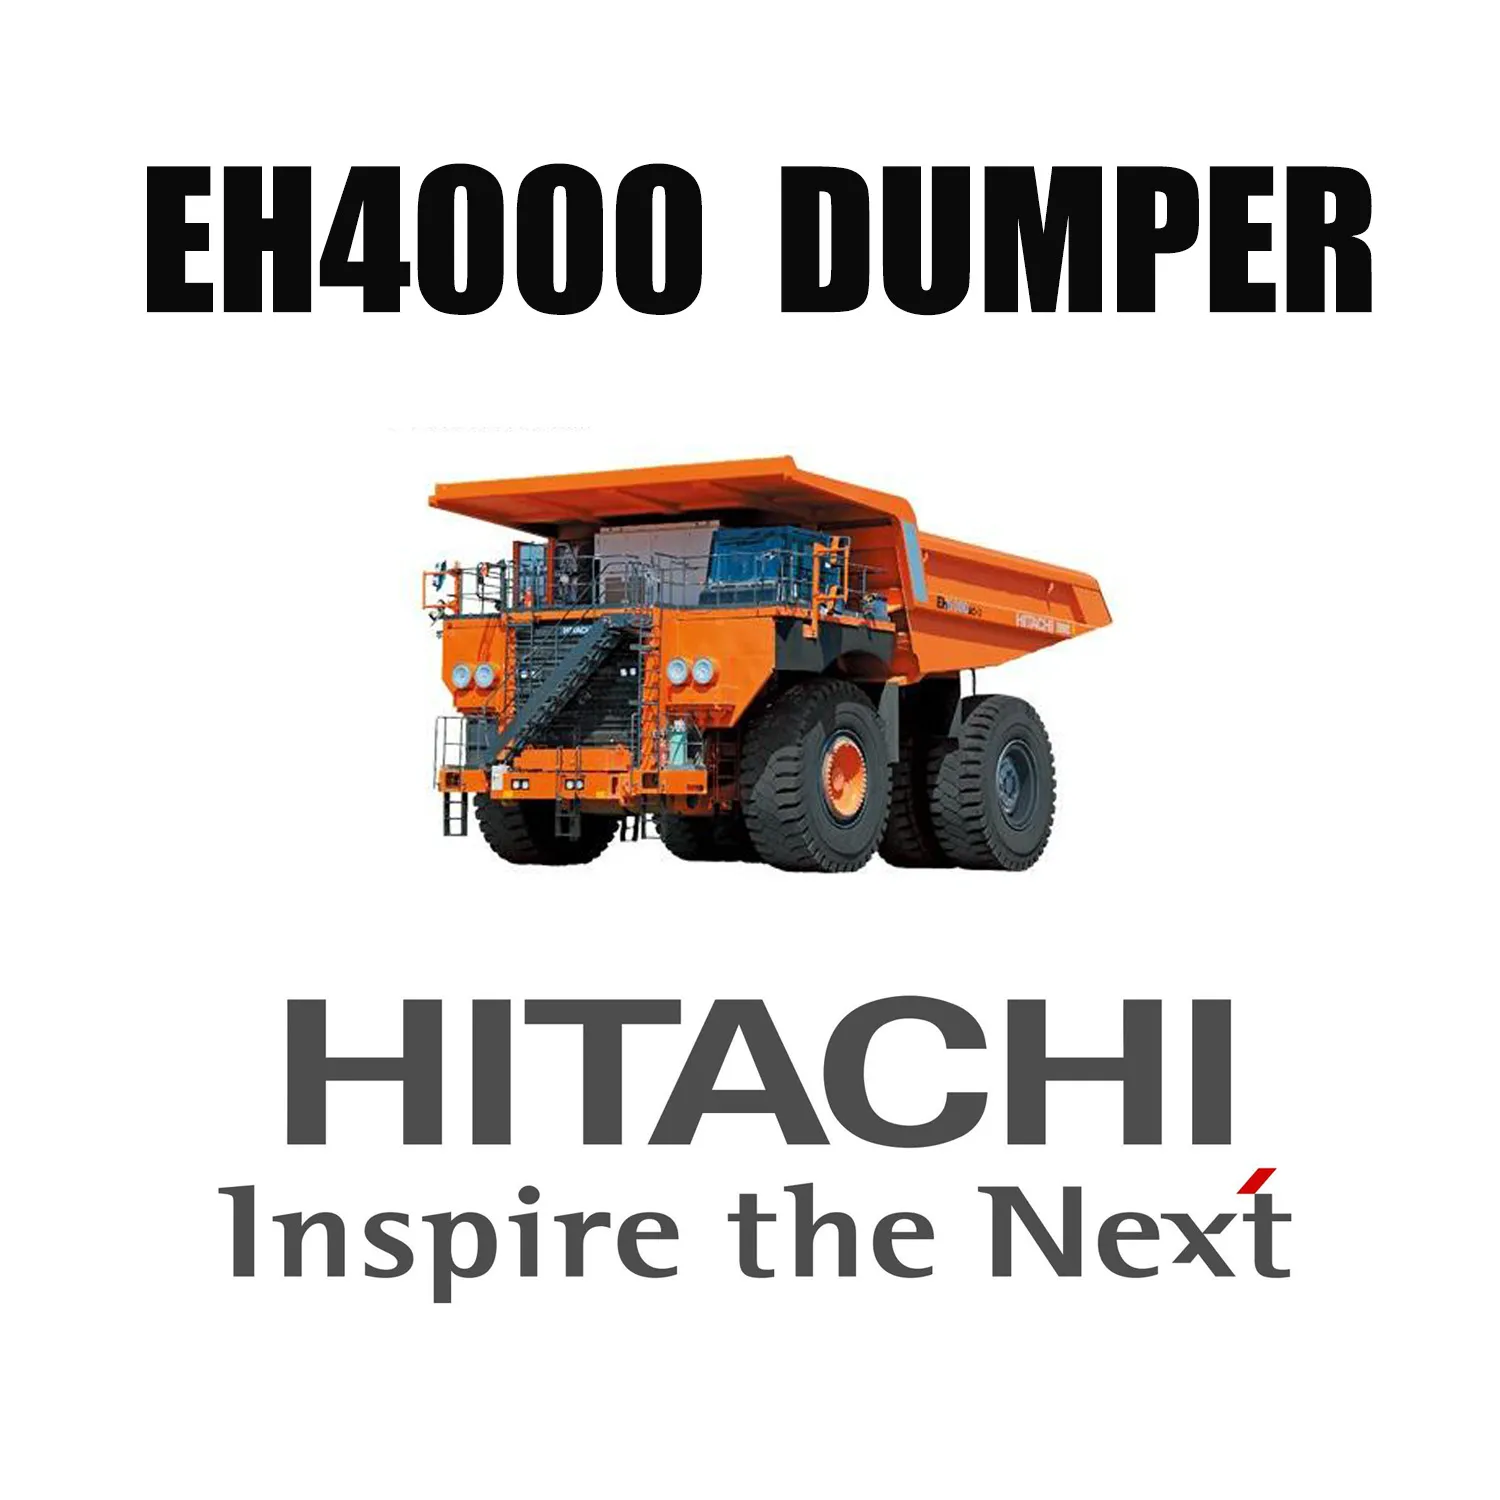 Wywrotki sztywnoramowe HITACHI EH4000 wyposażone w opony górnicze do robót ziemnych 46/90R57